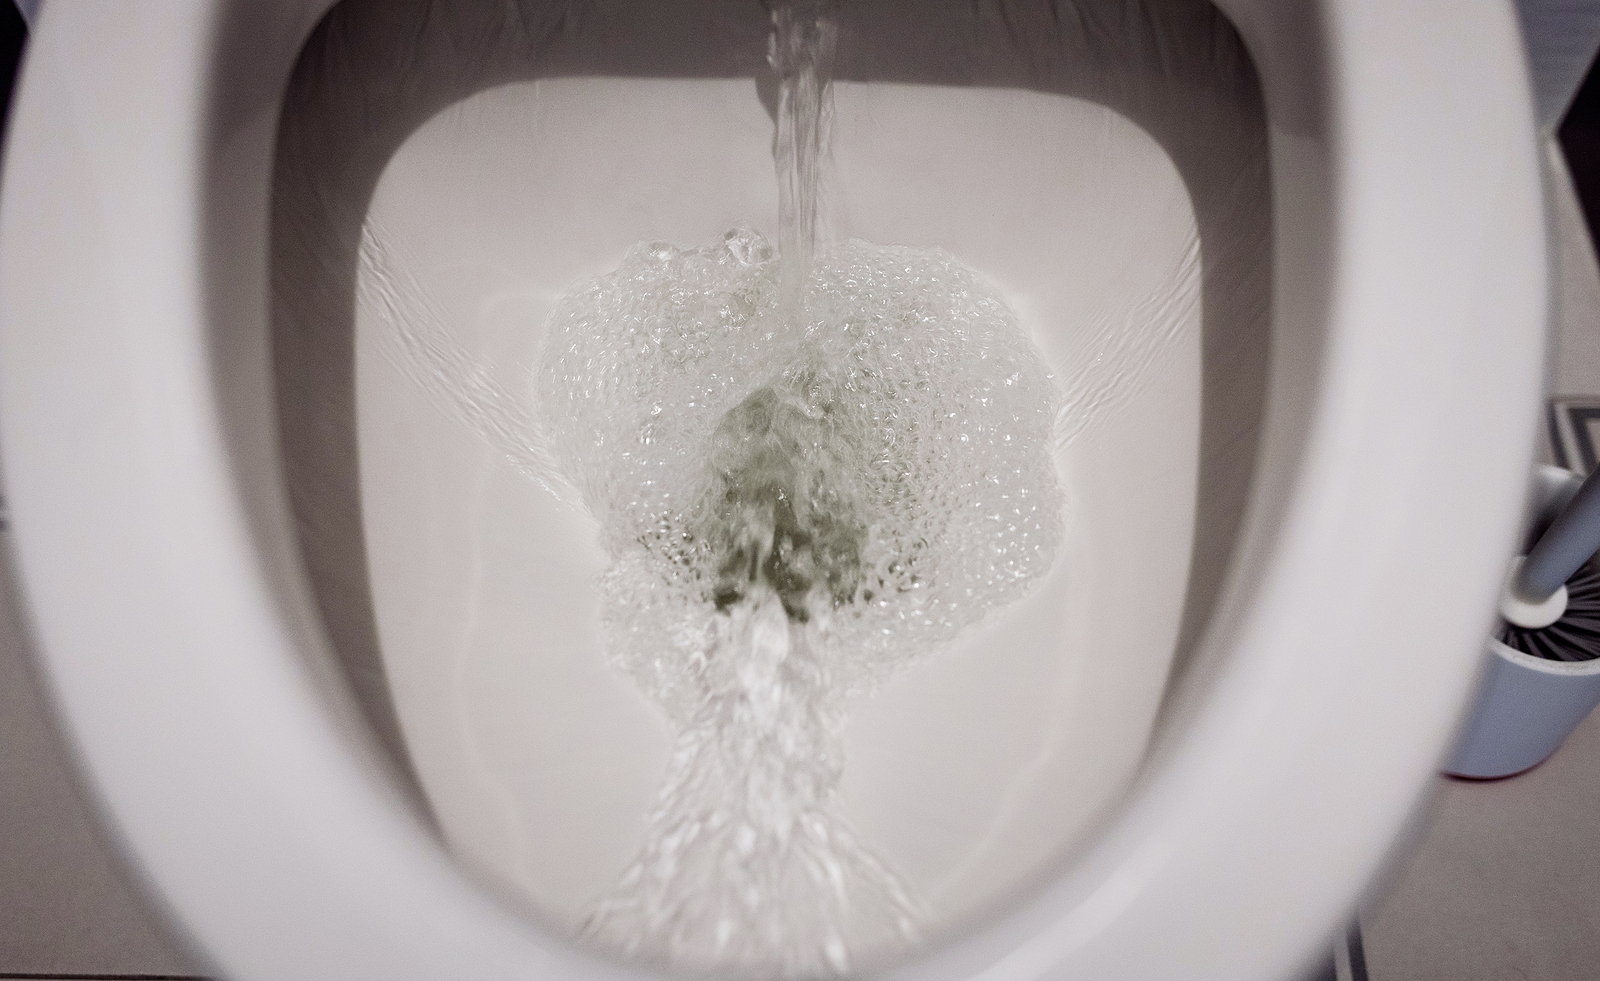 3 Ways to Manually Flush a Toilet